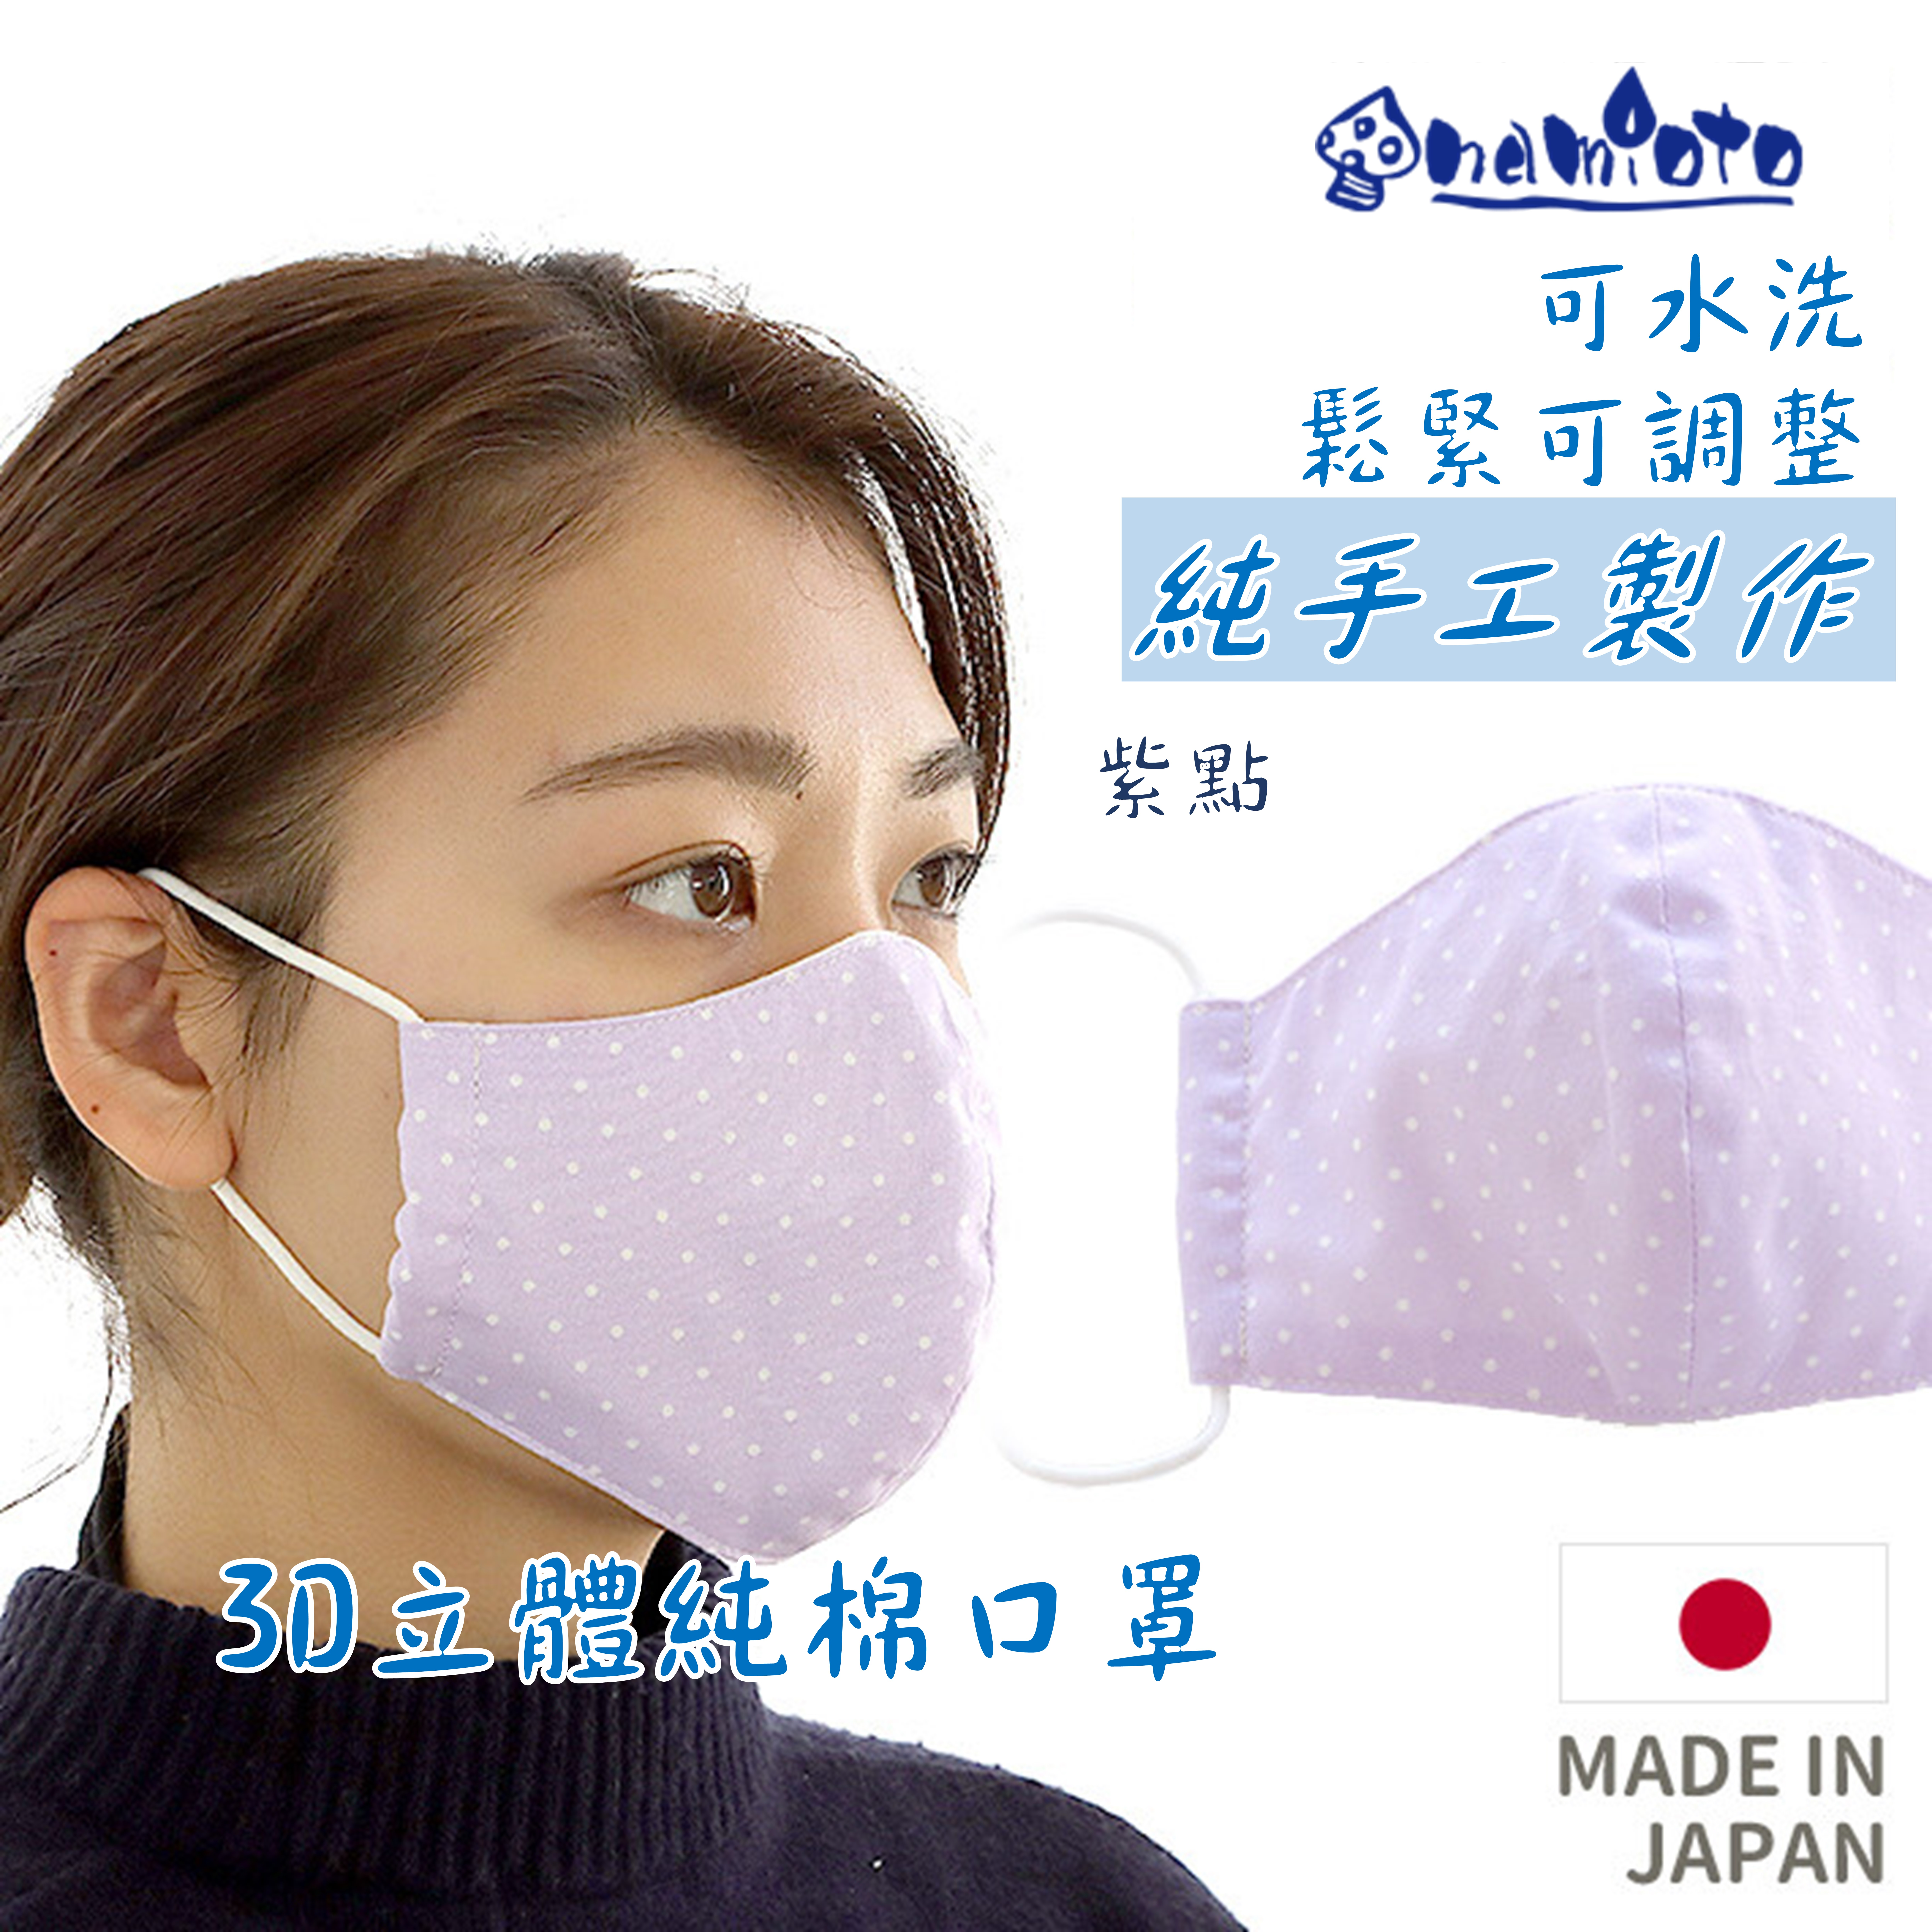 日本 namioto 純手工純棉雙層口罩 3D 立體口罩 紫點 防曬吸汗高透氣 舒適 口罩